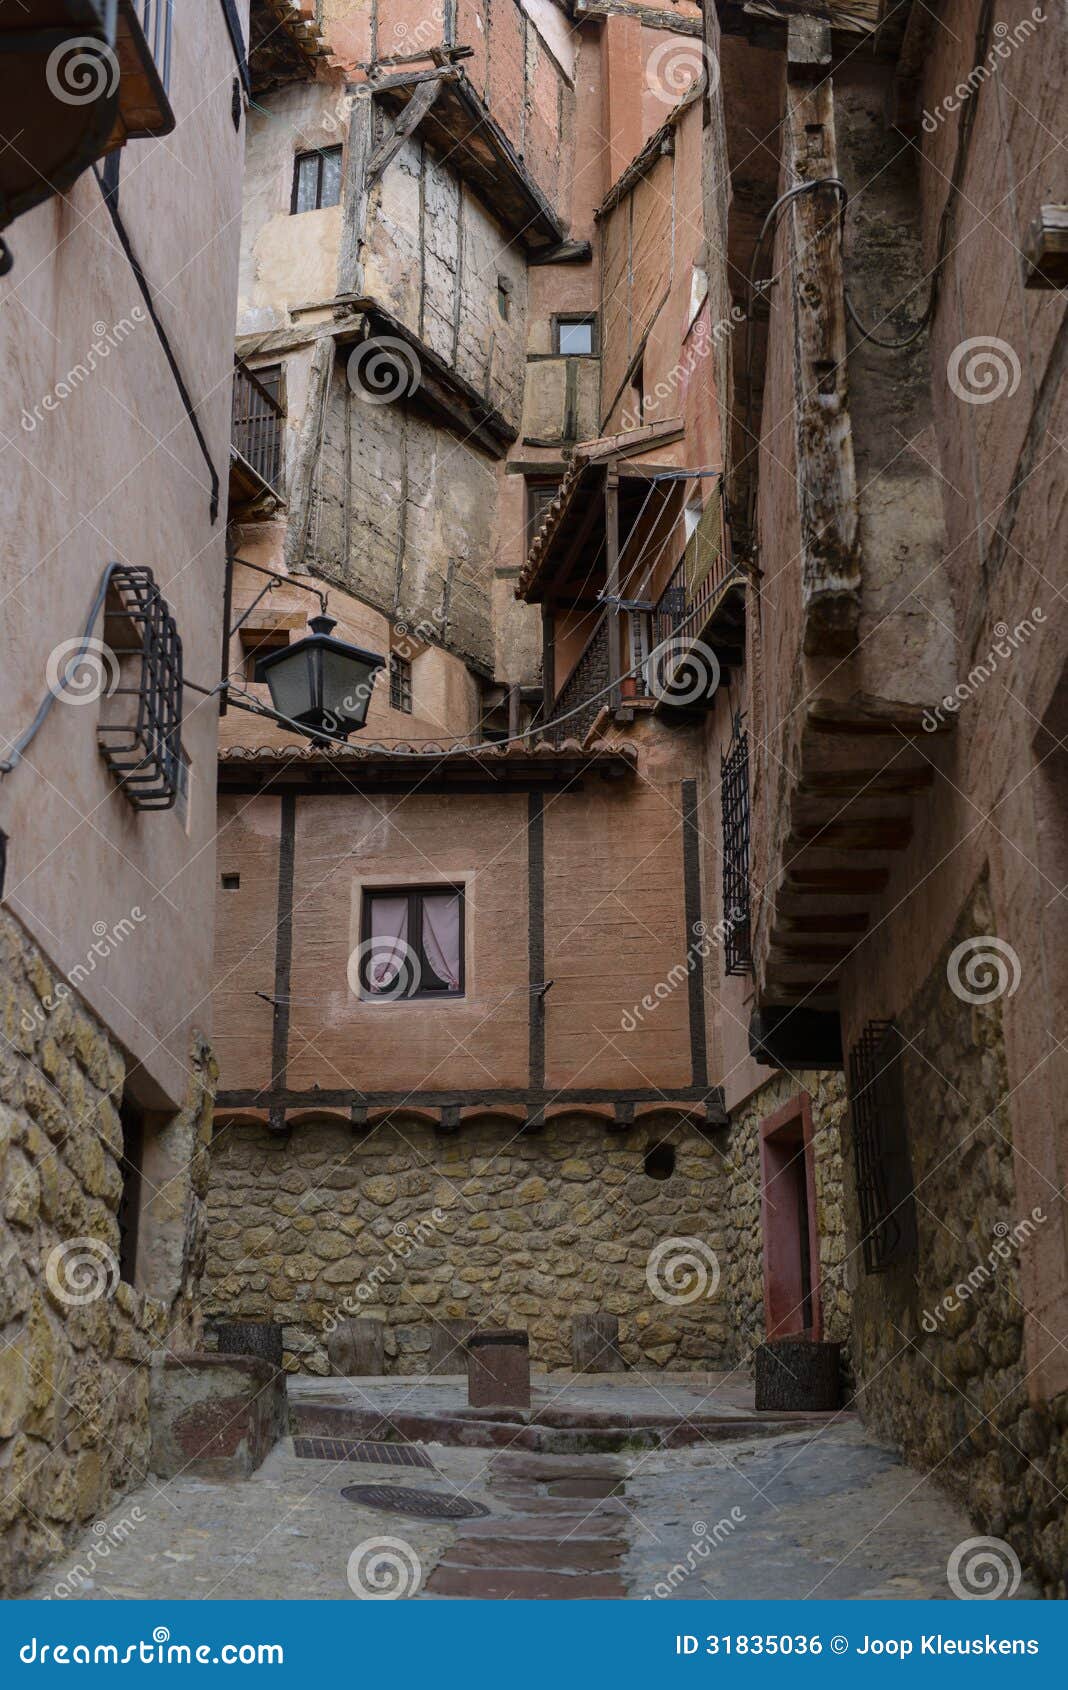 houses from albarracin spain